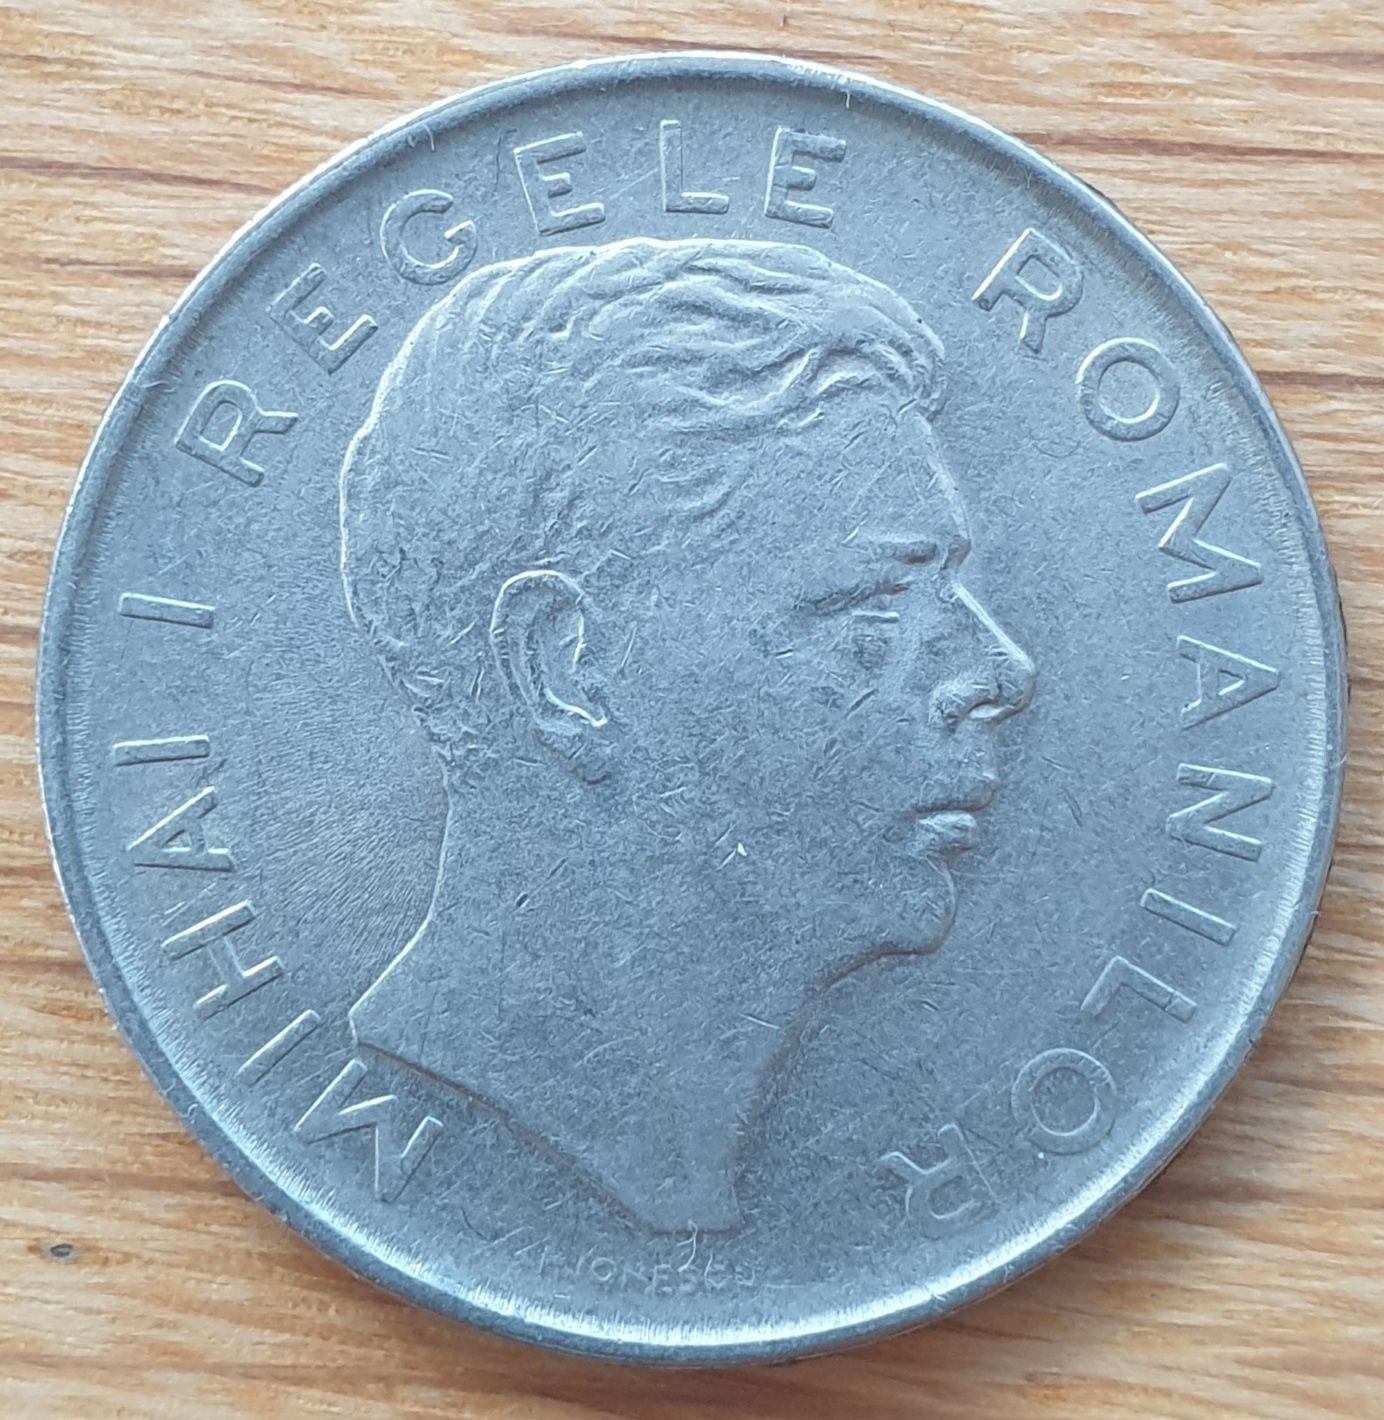 Monezi Mihai I Regele Romanilor de 100 lei, anii 1943 si 1944